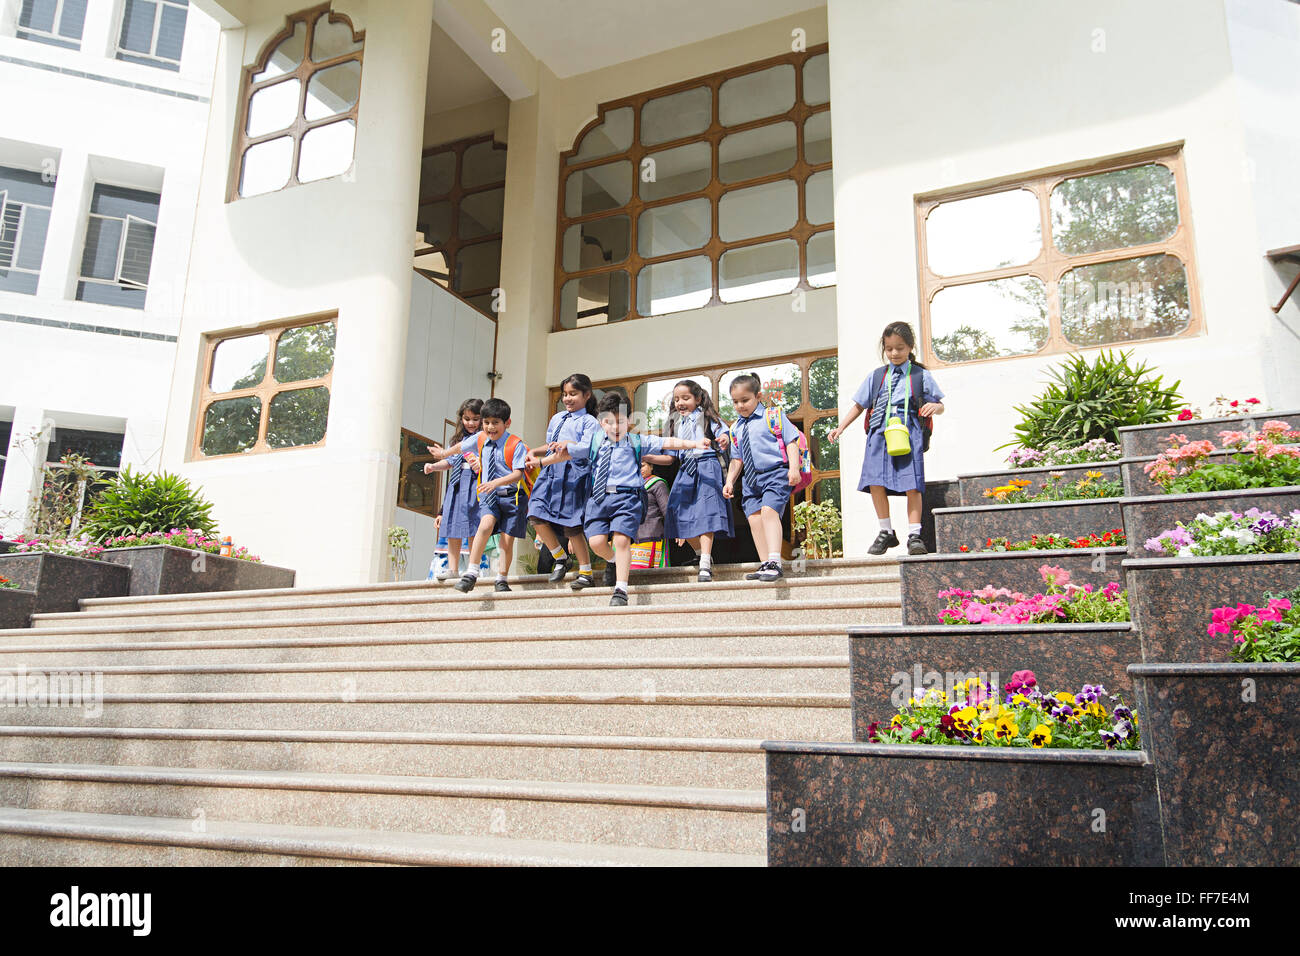 Treppe Asien Asiatische Asiaten Kleidung Rucksäcke fröhliche Heiterkeit Kind Kindheit Childs Klassenkamerad Bild Farben Farbbild Stockfoto